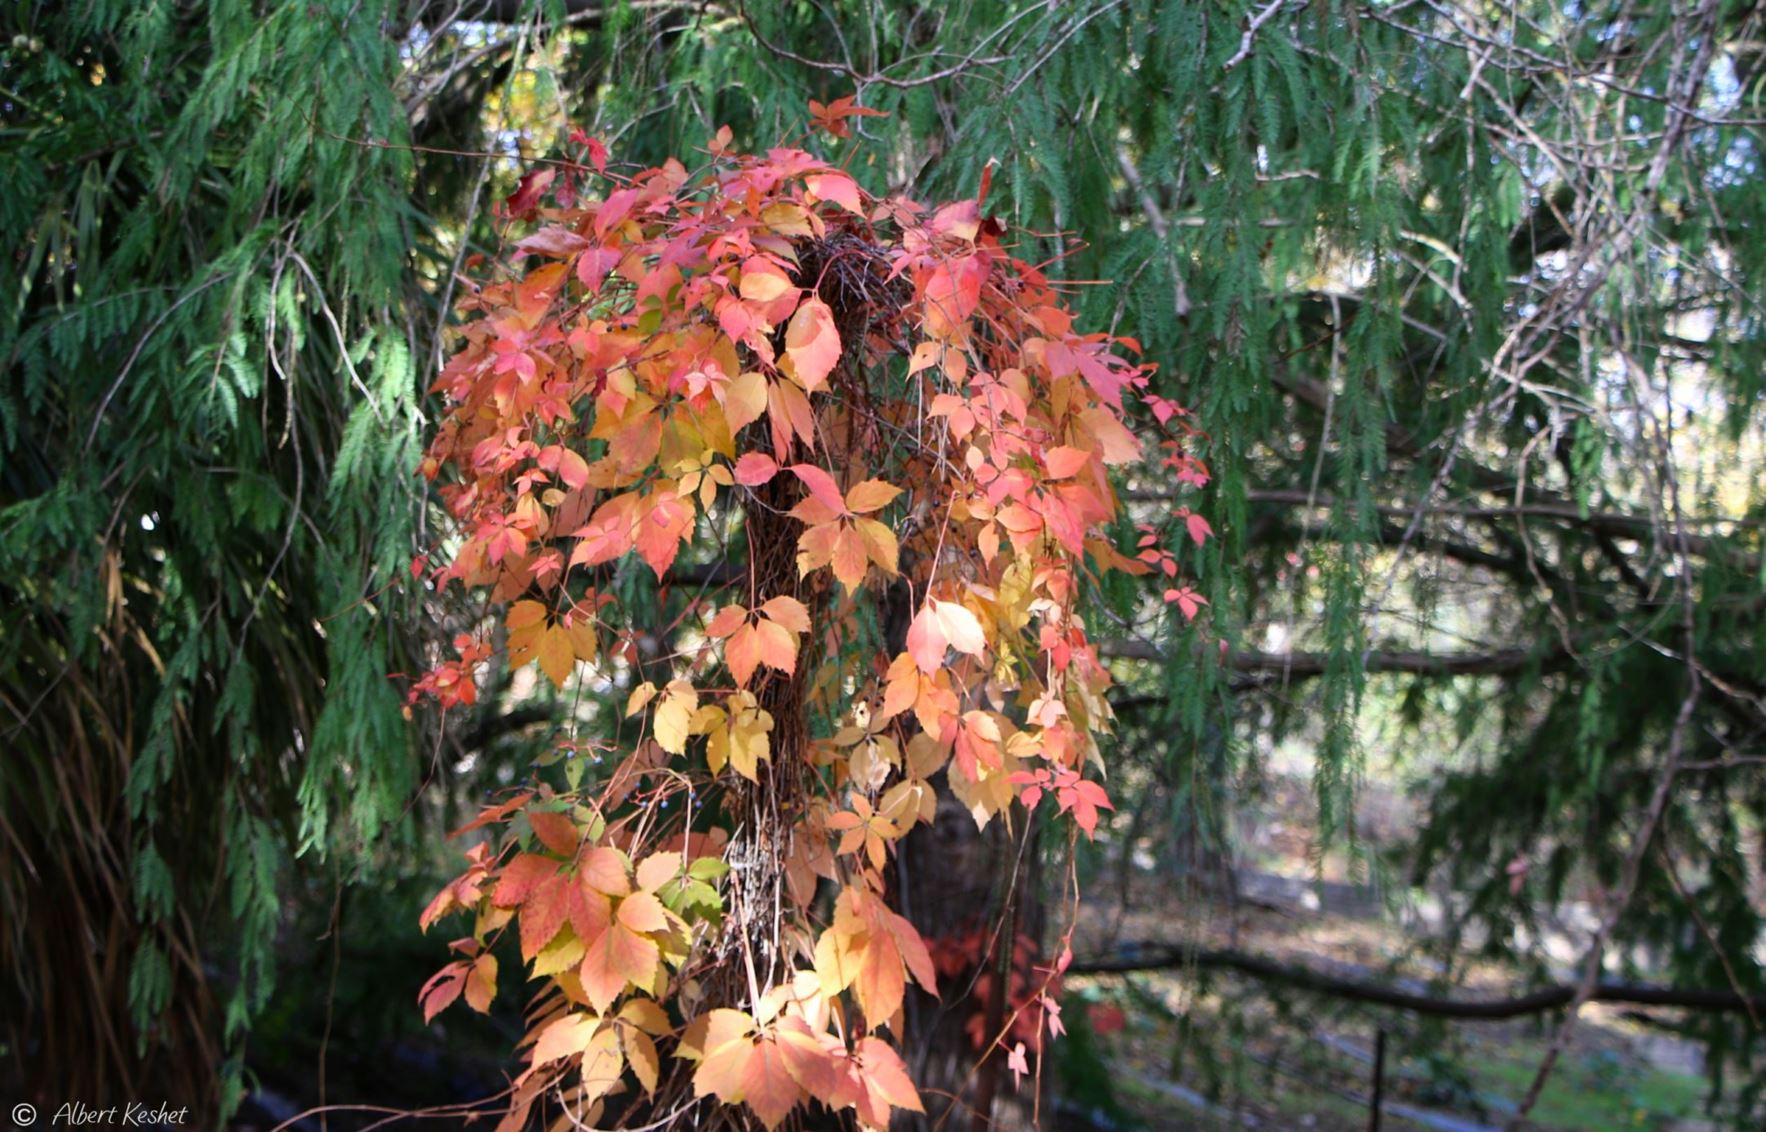 Parthenocissus quinquefolia - Virginia Creeper, Five-leaved ivy, Five-finger, Woodbine, גפנית מחומשת, גפנית מחומשת